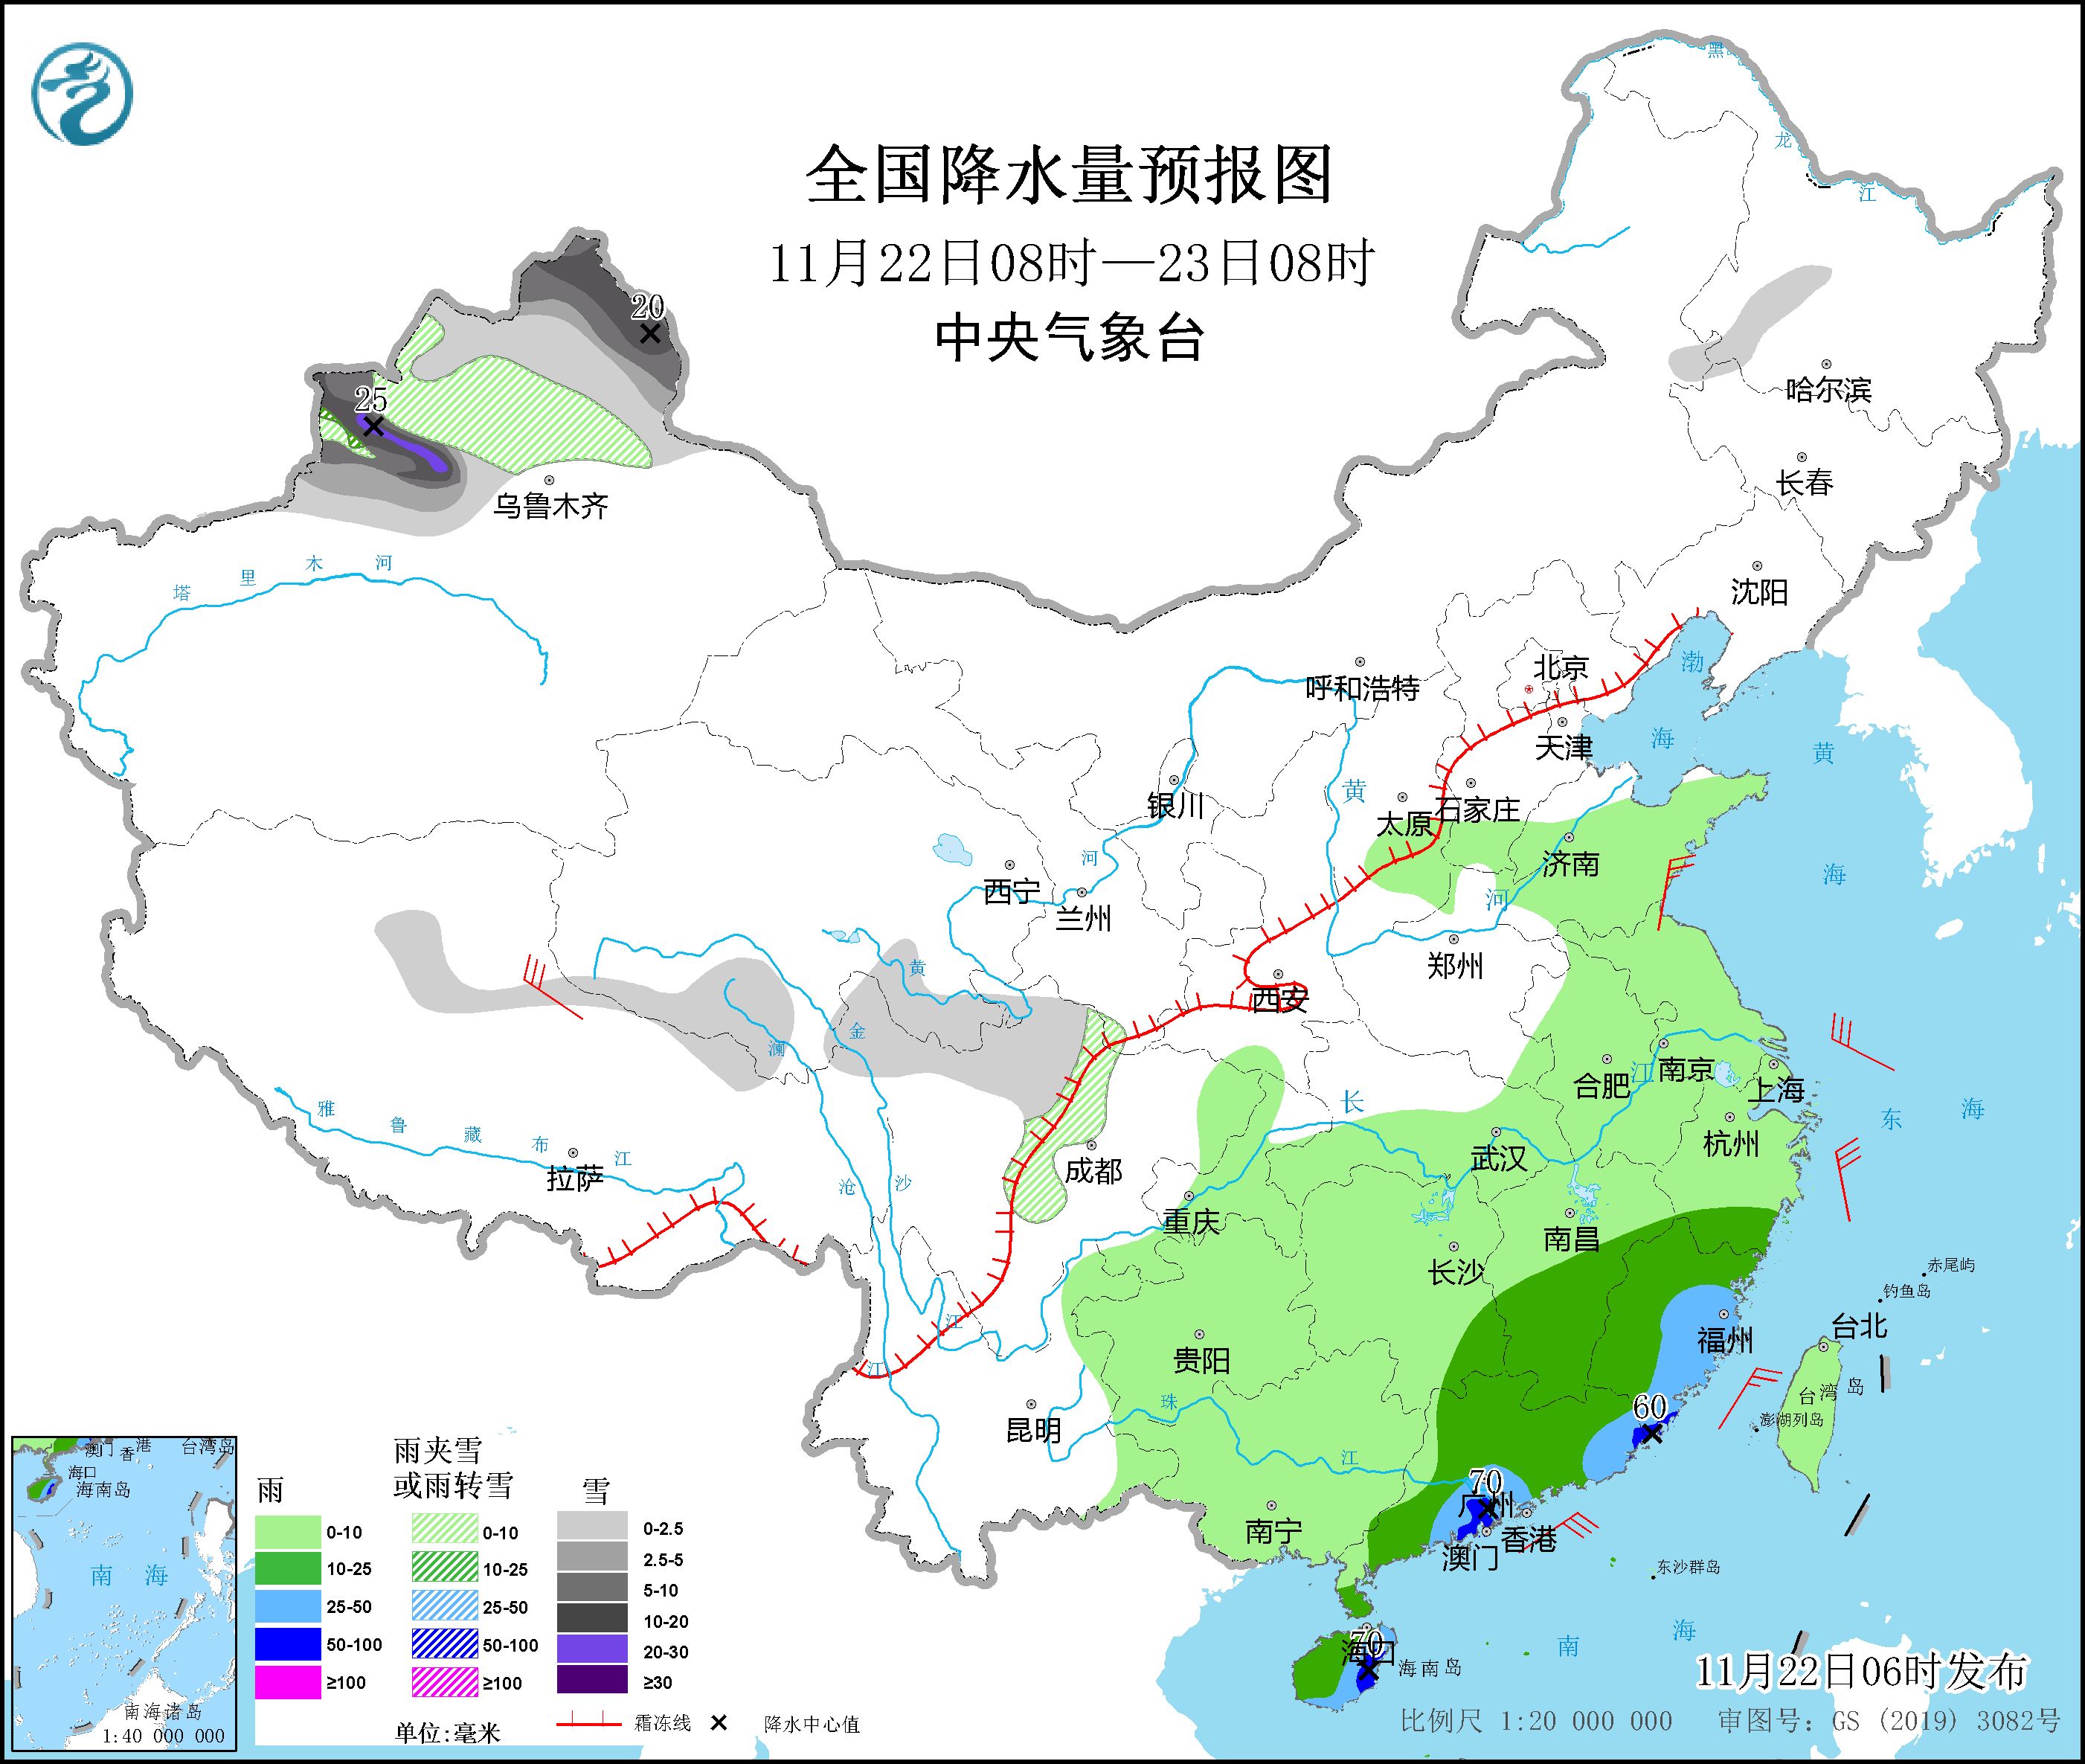 华南地区将有明显降雨 新疆北部将有较强雨雪